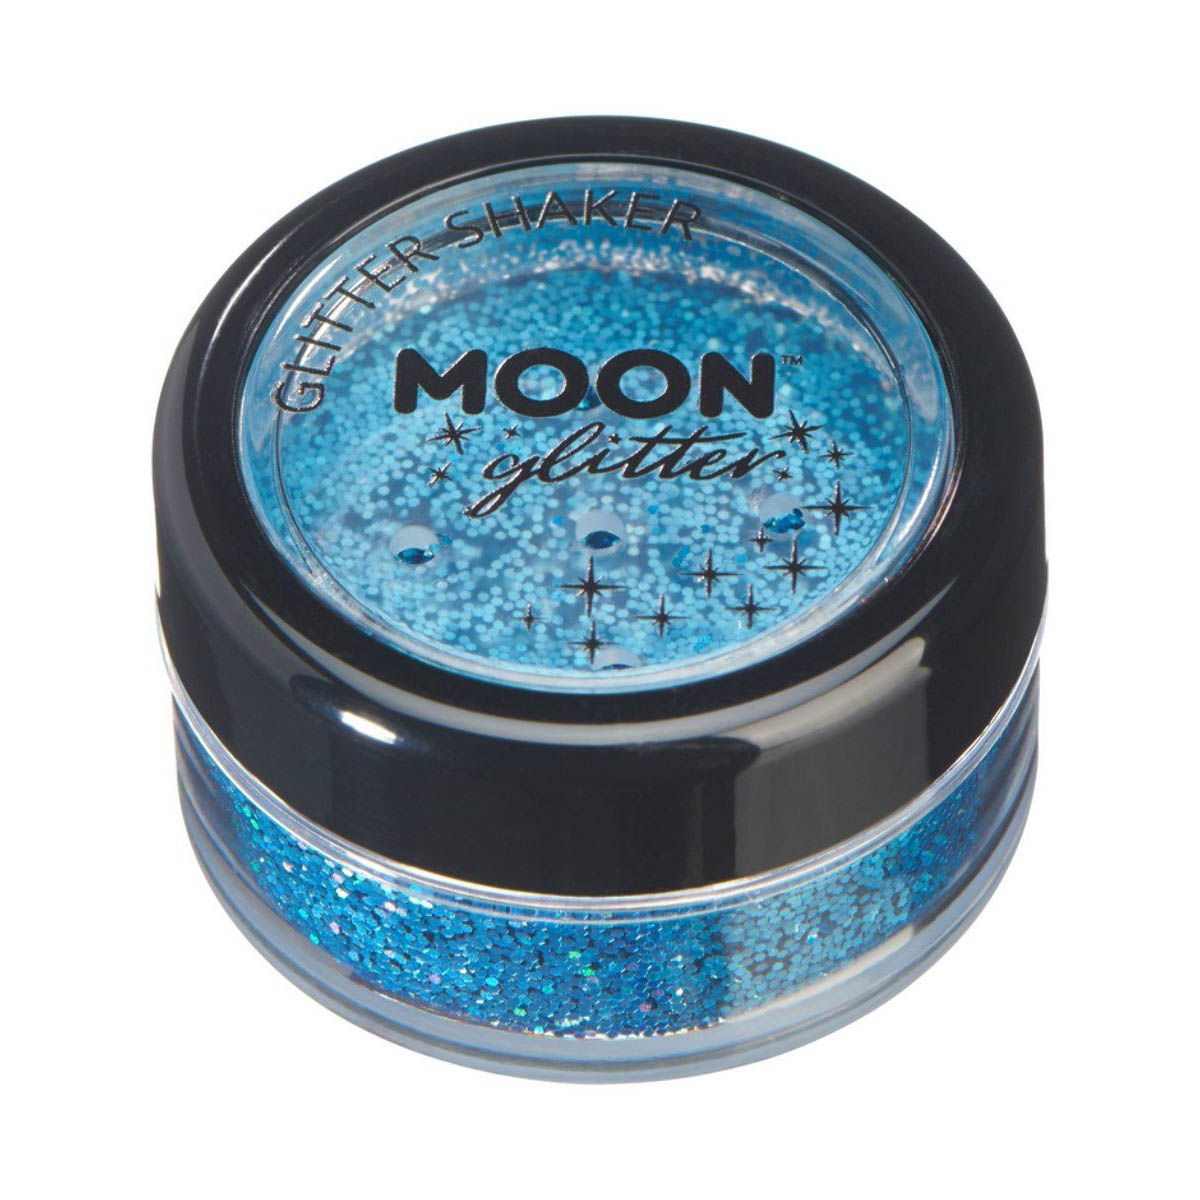 Moon glitter i shaker burk, holografisk 5g Blå